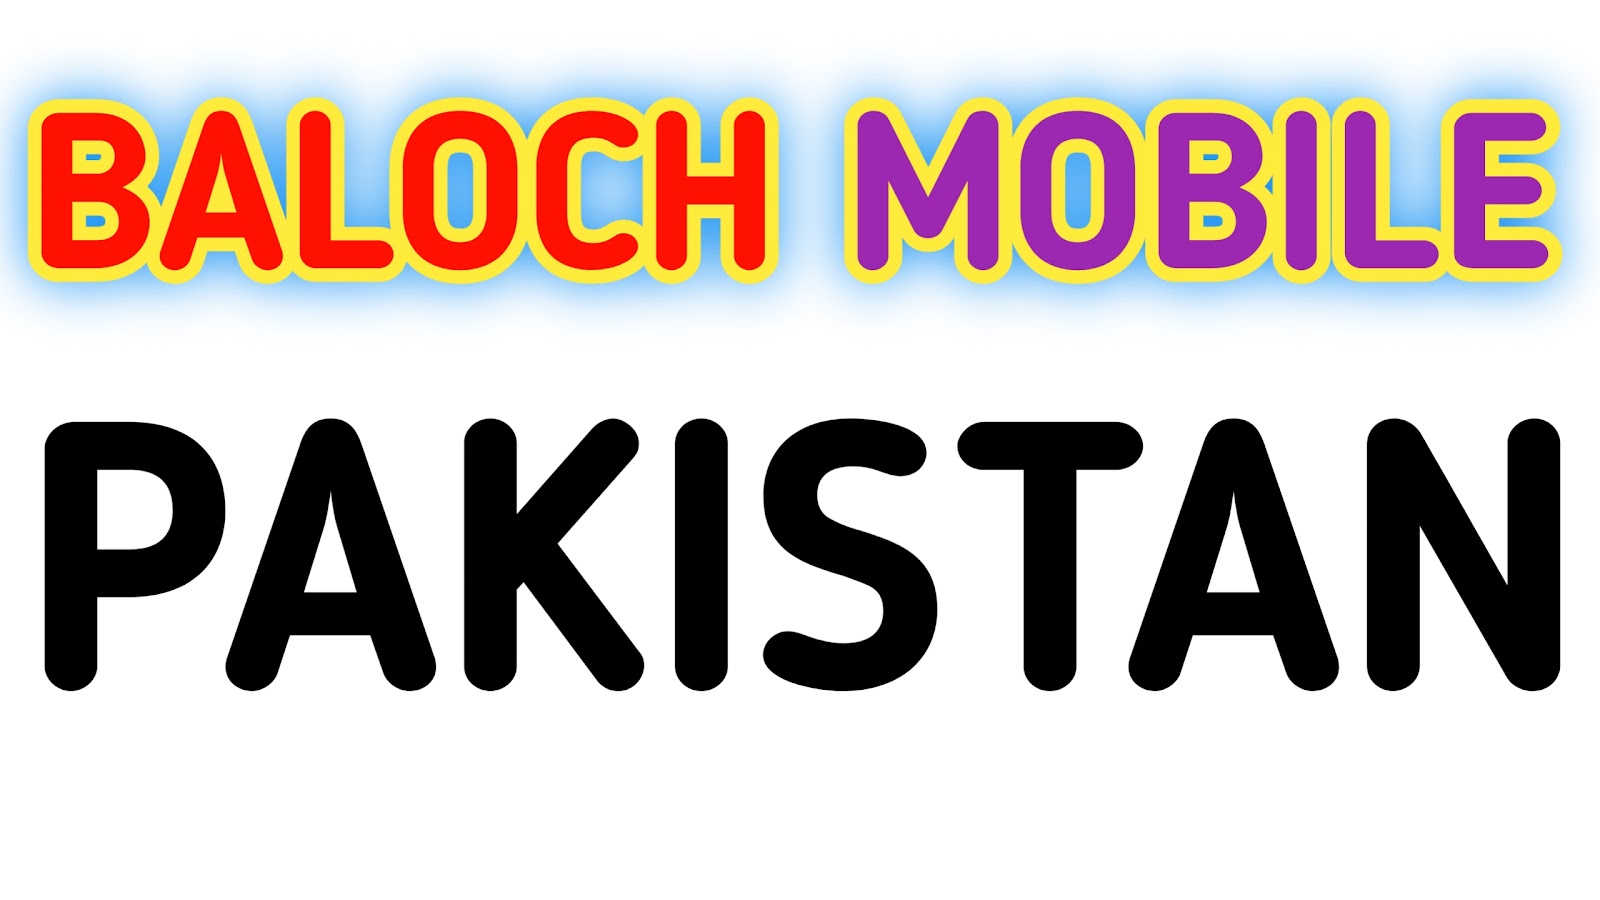 Baloch Mobile Pakistan